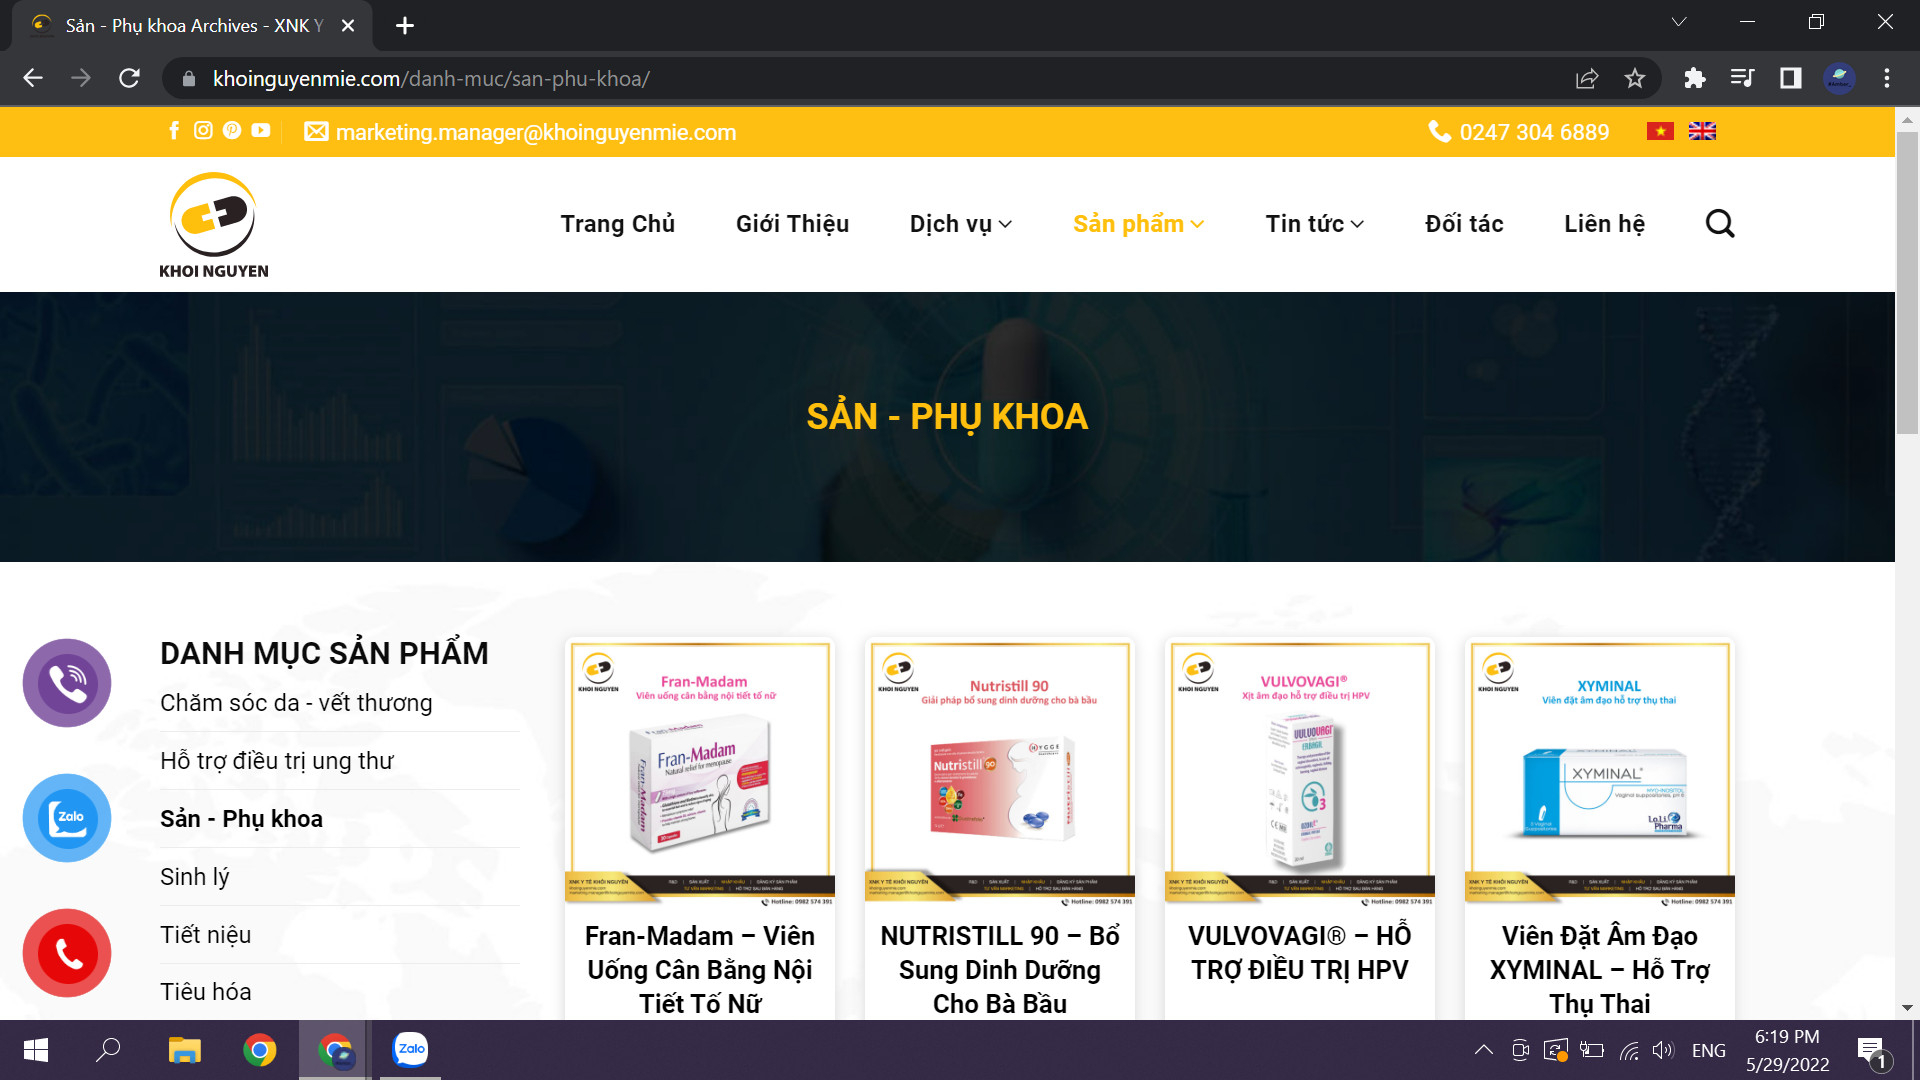 Website của Khôi Nguyên Mie giới thiệu các sản phẩm sản - phụ khoa Khôi Nguyên Mie đã nhập khẩu 